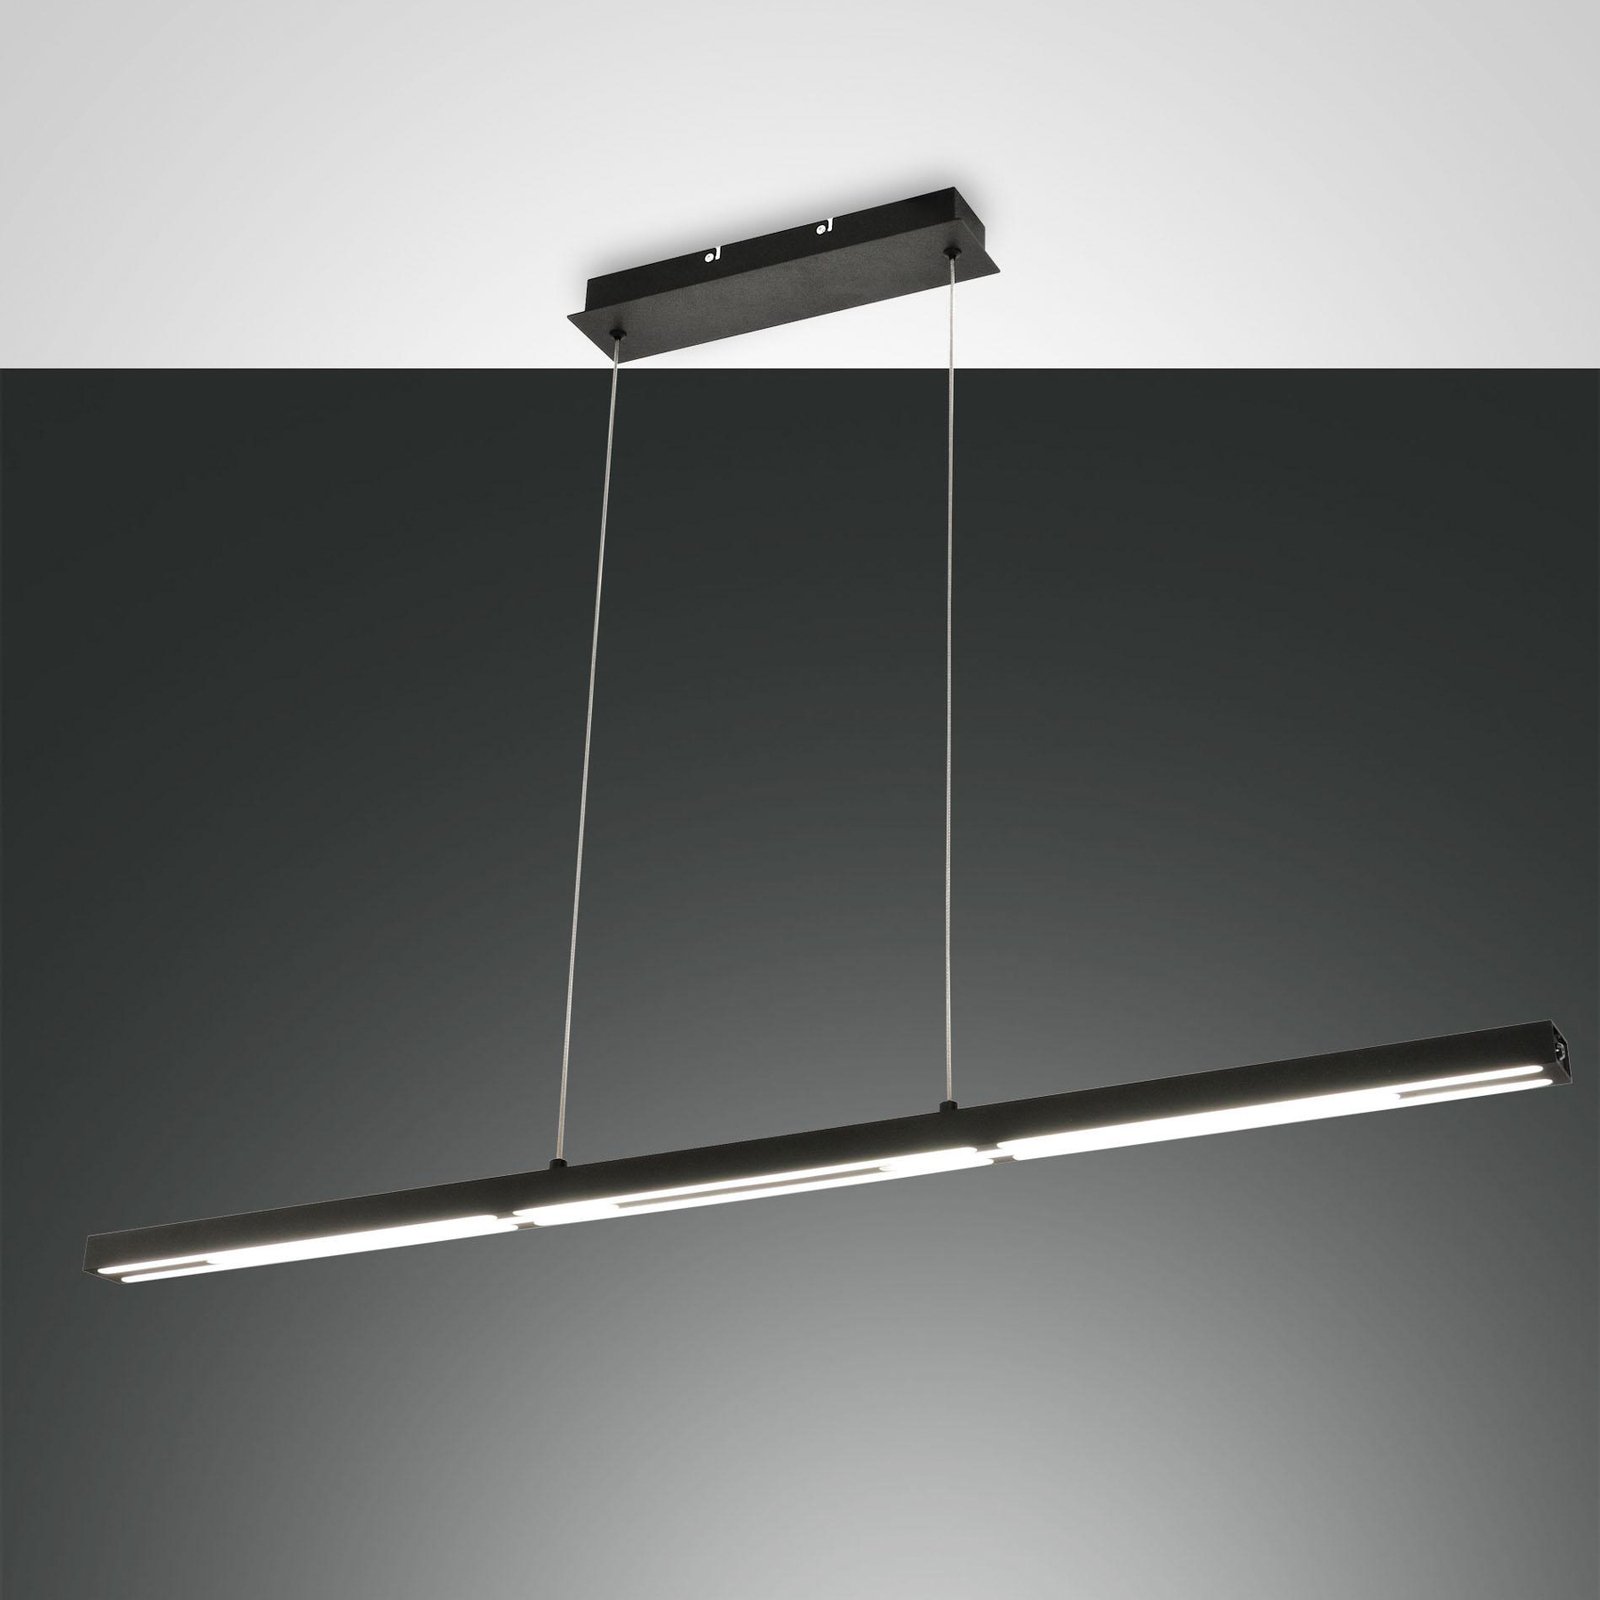 Candeeiro suspenso Ling LED, preto, com luz superior e inferior, regulável